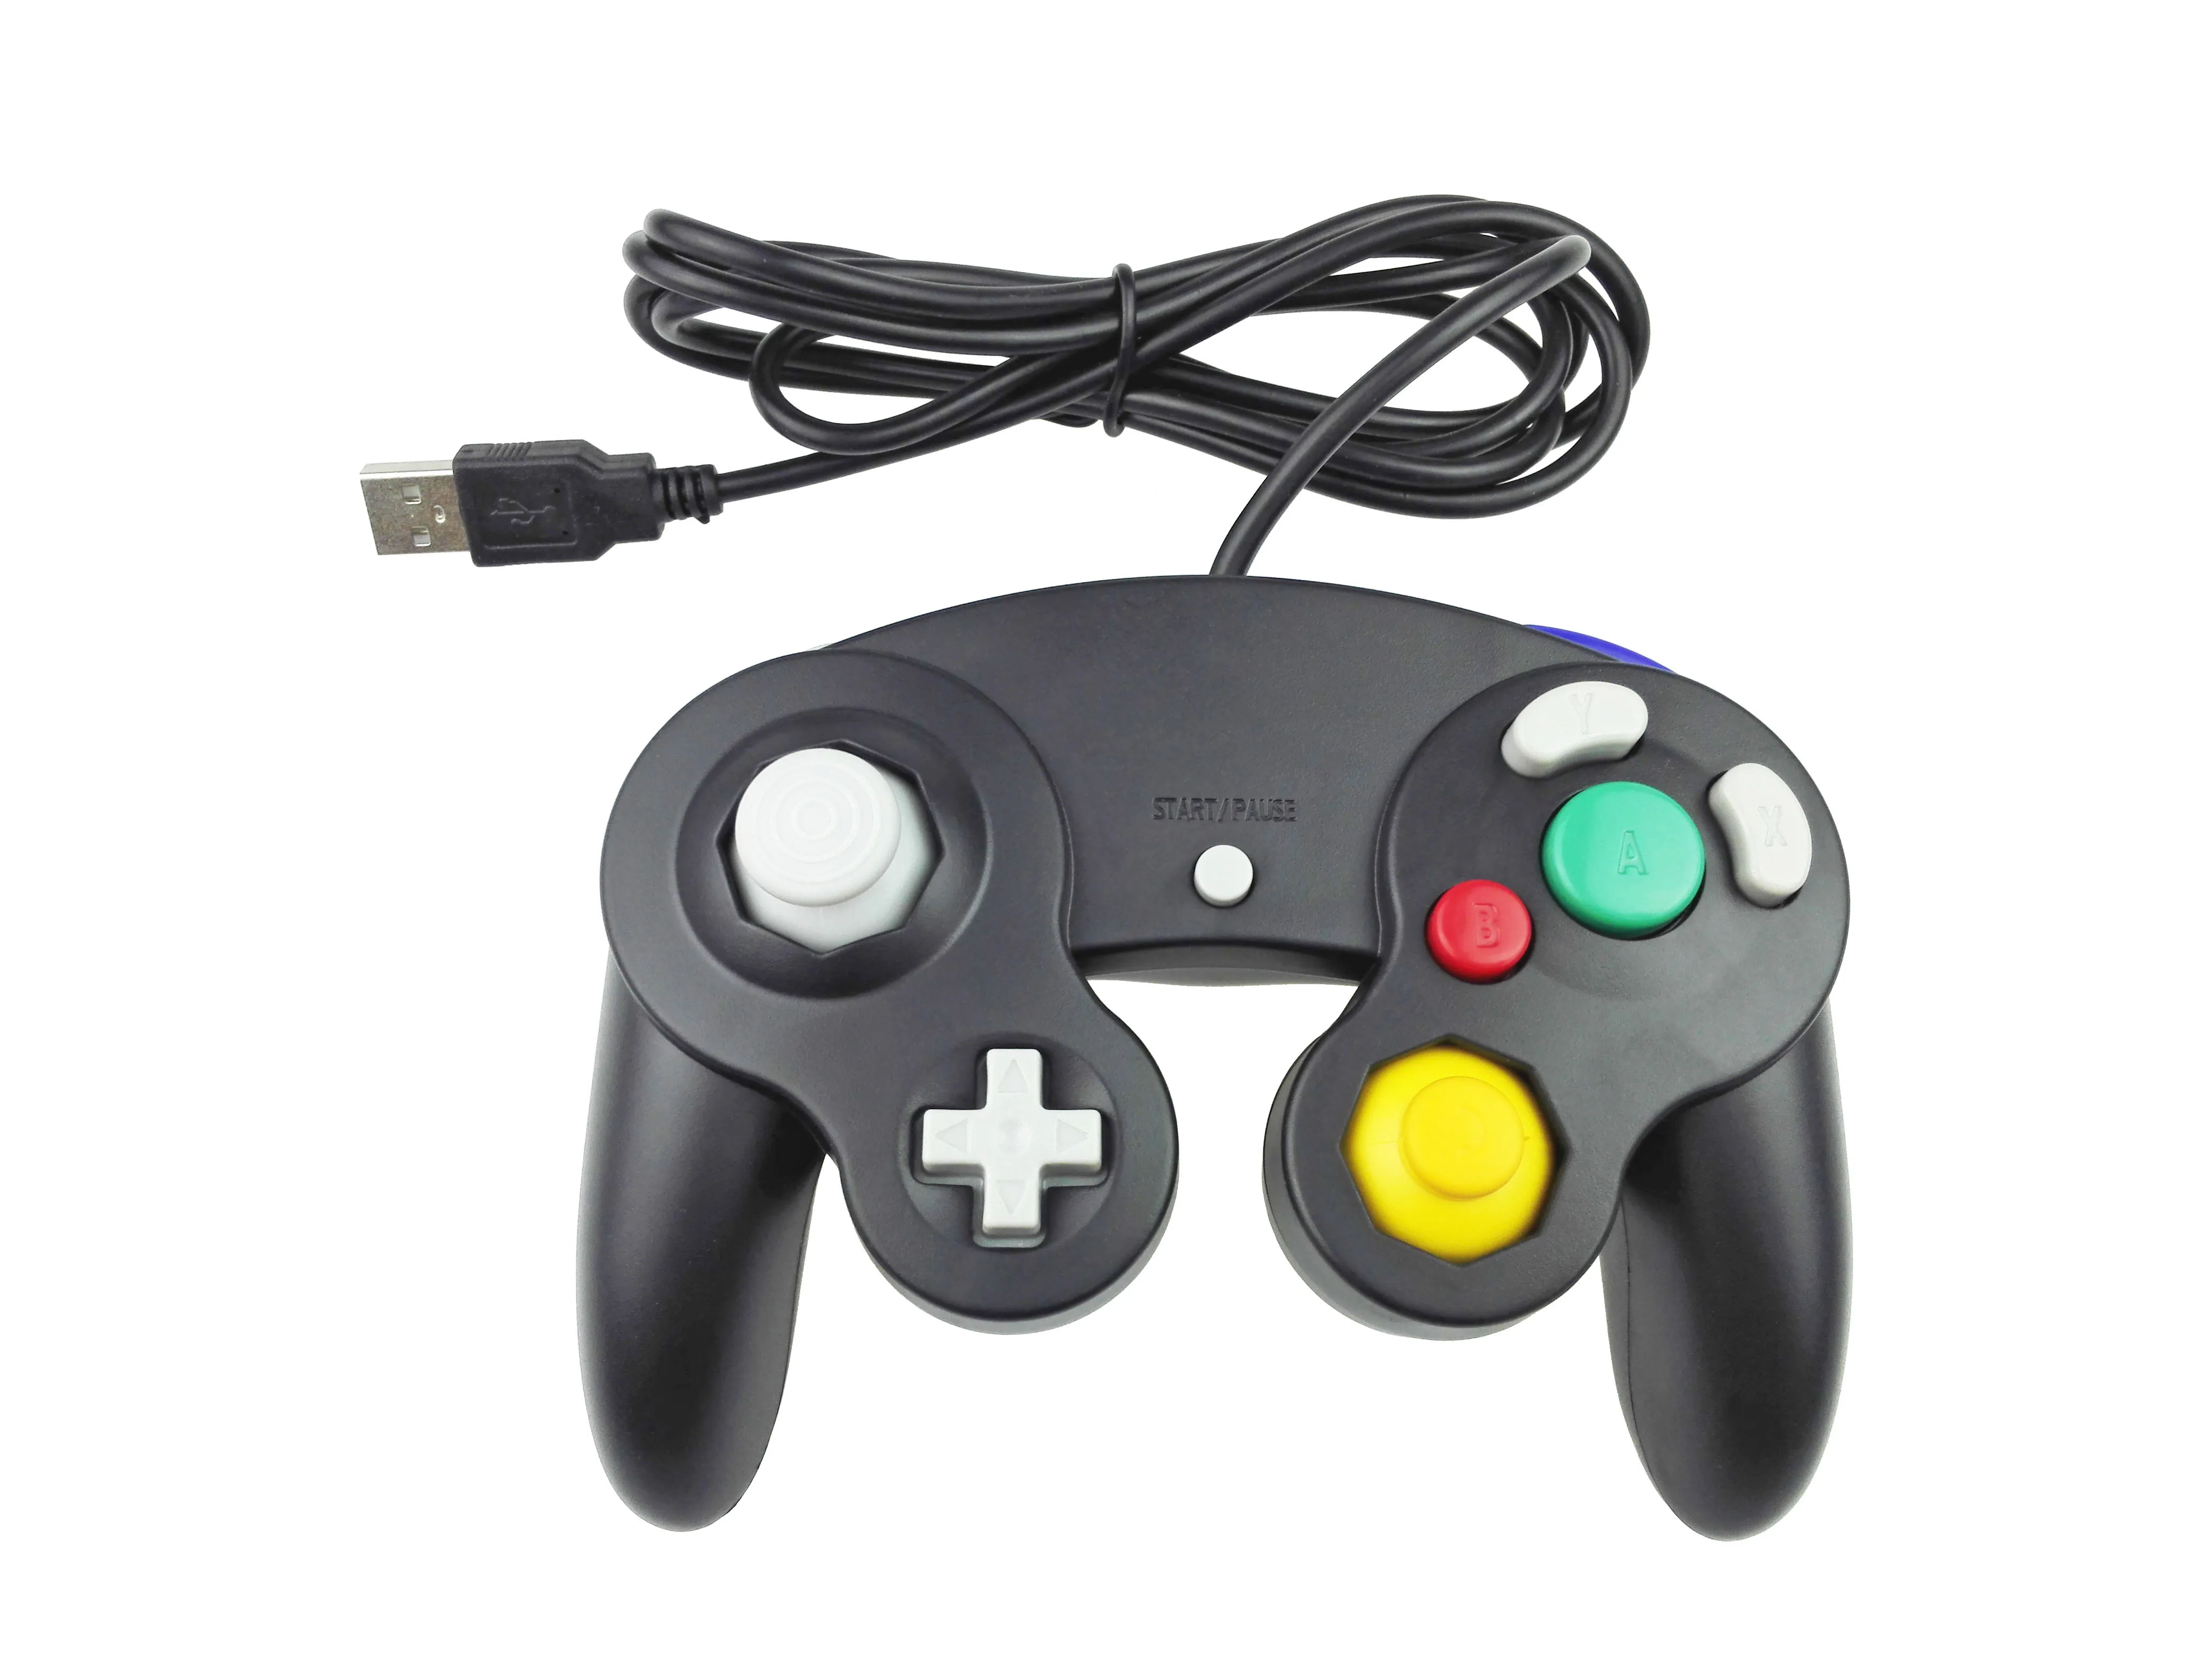 10 stks / partij Snelle Verzending Game Controller USB Wired Handheld Joystick voor Nintend voor Mac Computer PC Gamepad